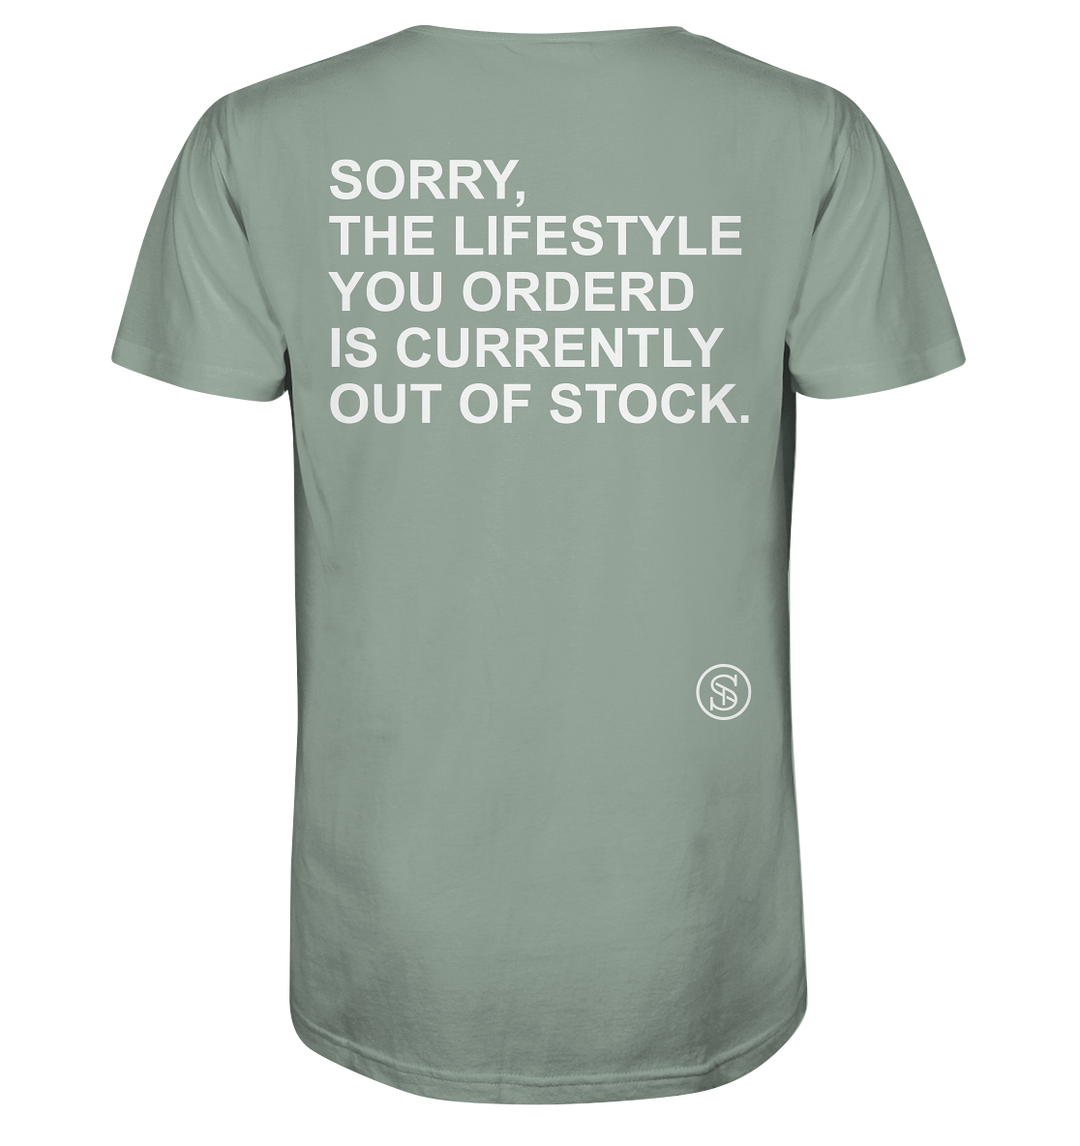 Lifestyle Statement Herren - Organic Shirt Aloe Herren Shirt Organic Shirt True Statement